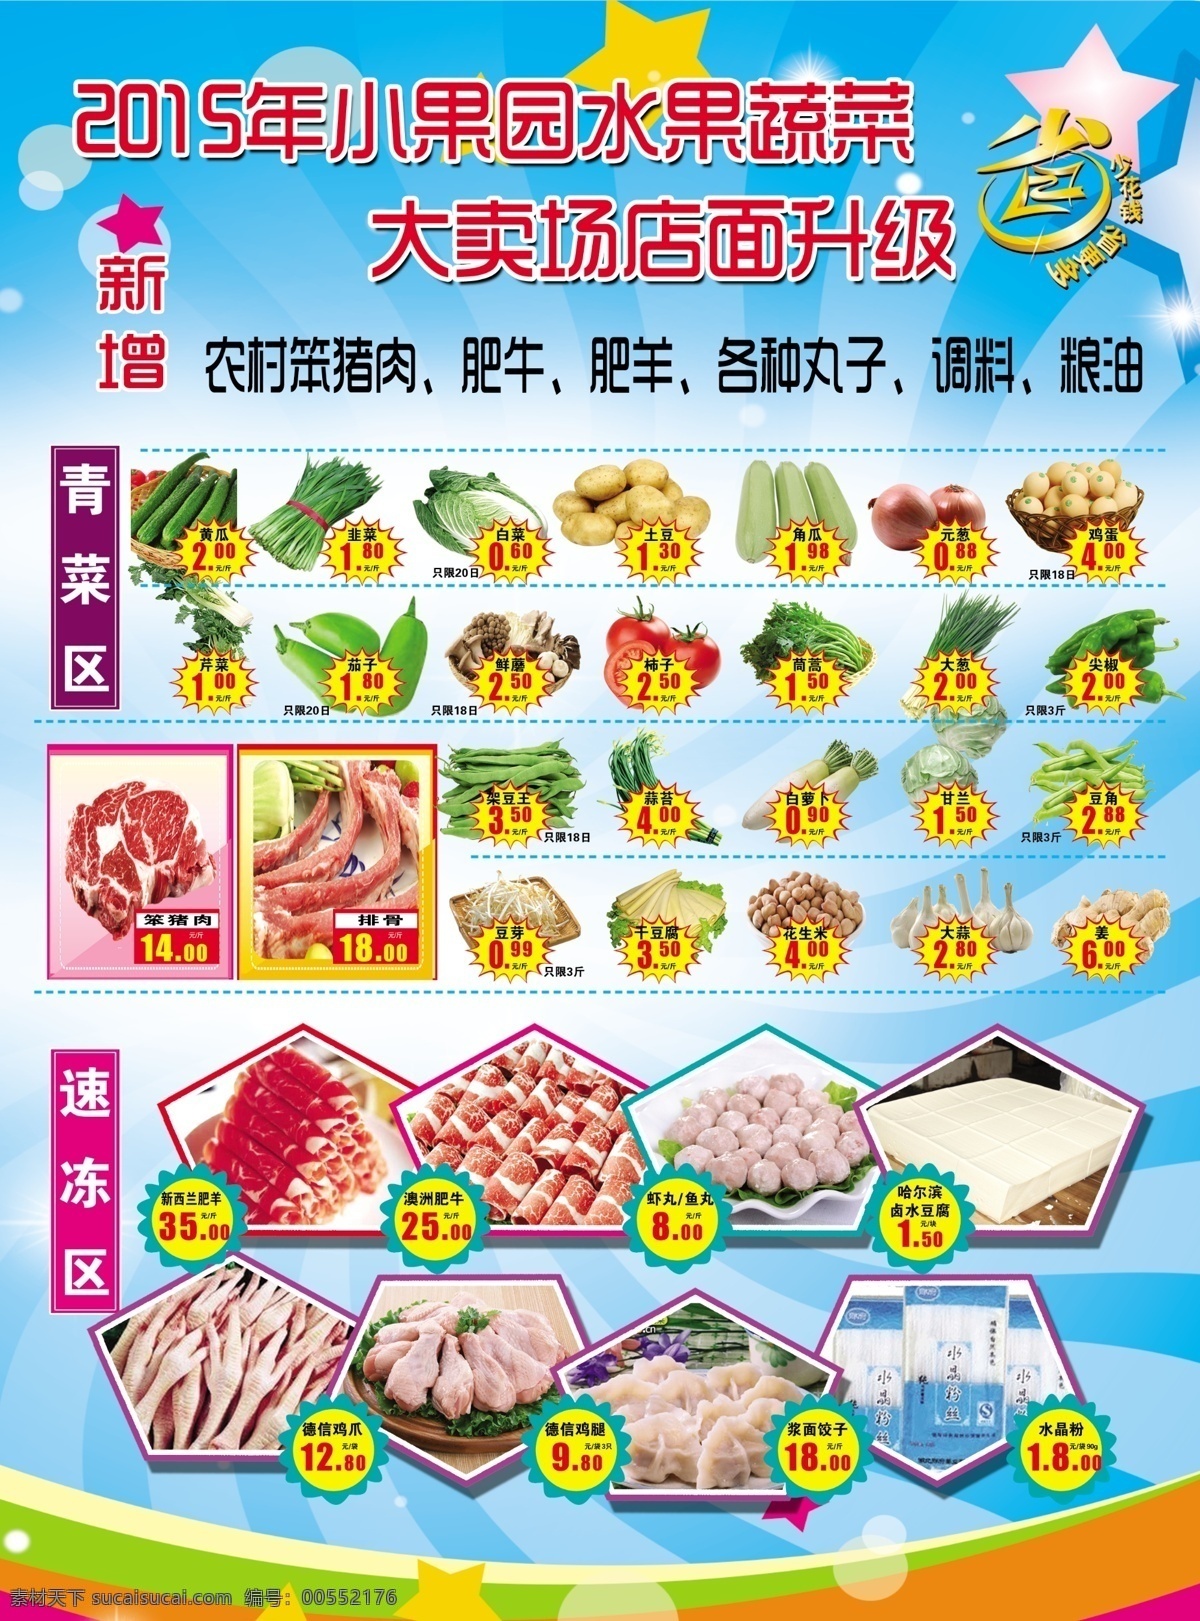 水果蔬菜传单 水果卖场 速冻食品 调料 干果类 dm宣传单